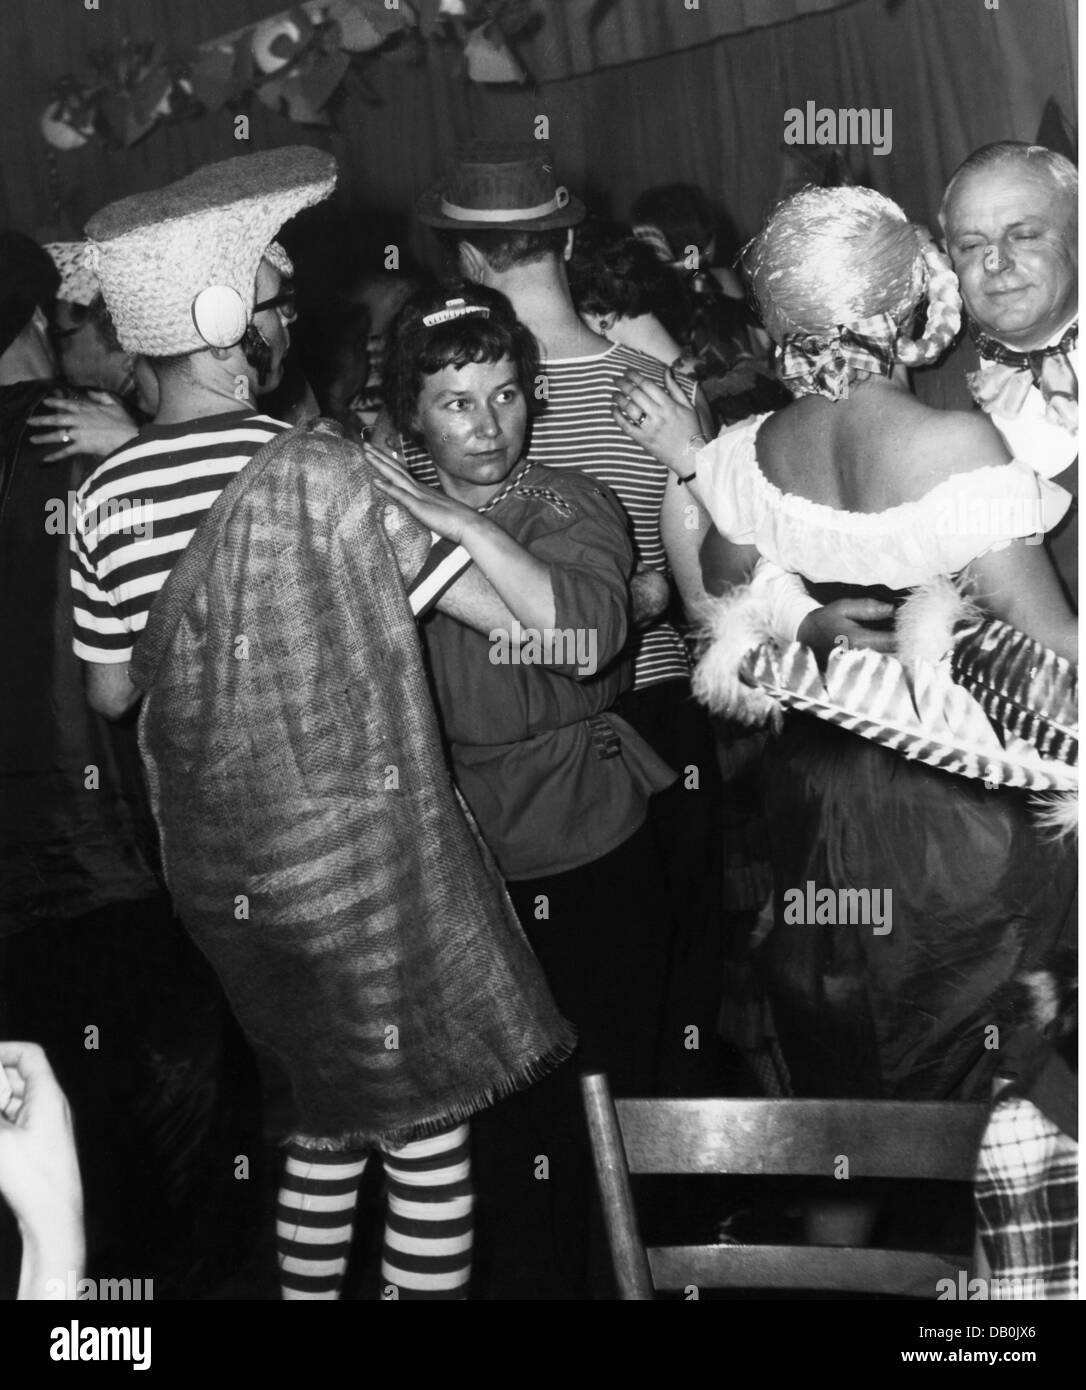 Festlichkeiten, Karneval, Festtag des 'Deutschen Ritter', kostümierte Gäste tanzen, Löwenbräukeller, München, 1957, Zusatz-Rechte-Clearenzen-nicht vorhanden Stockfoto